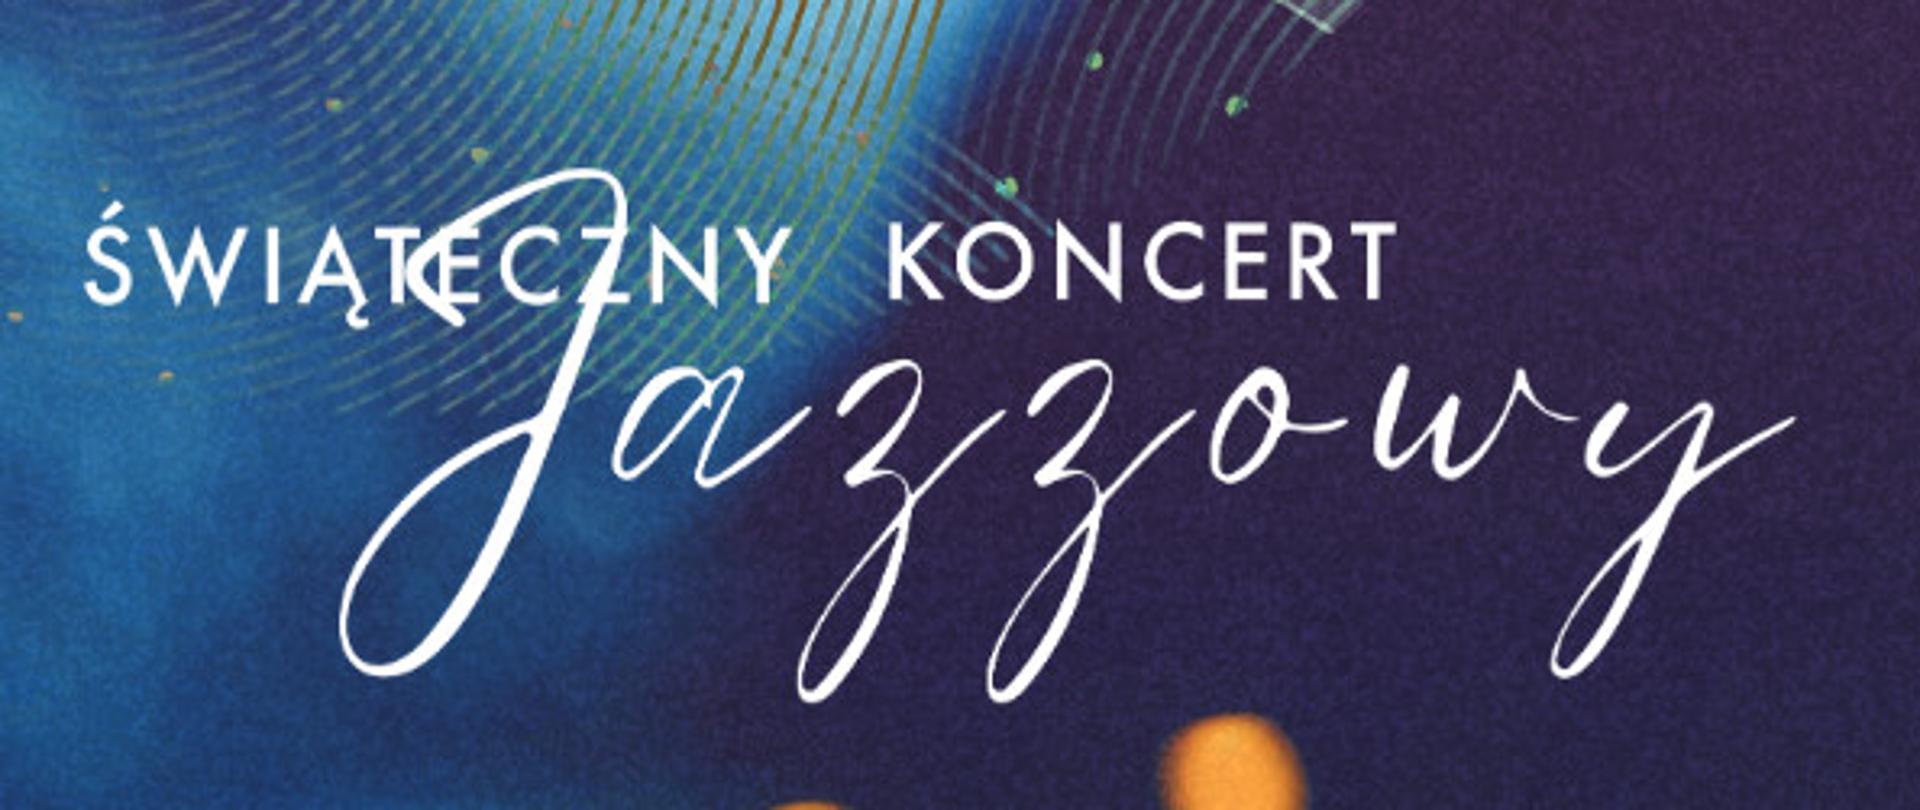 Świąteczny Koncert Jazzowy - plakat z saksofonem w tle